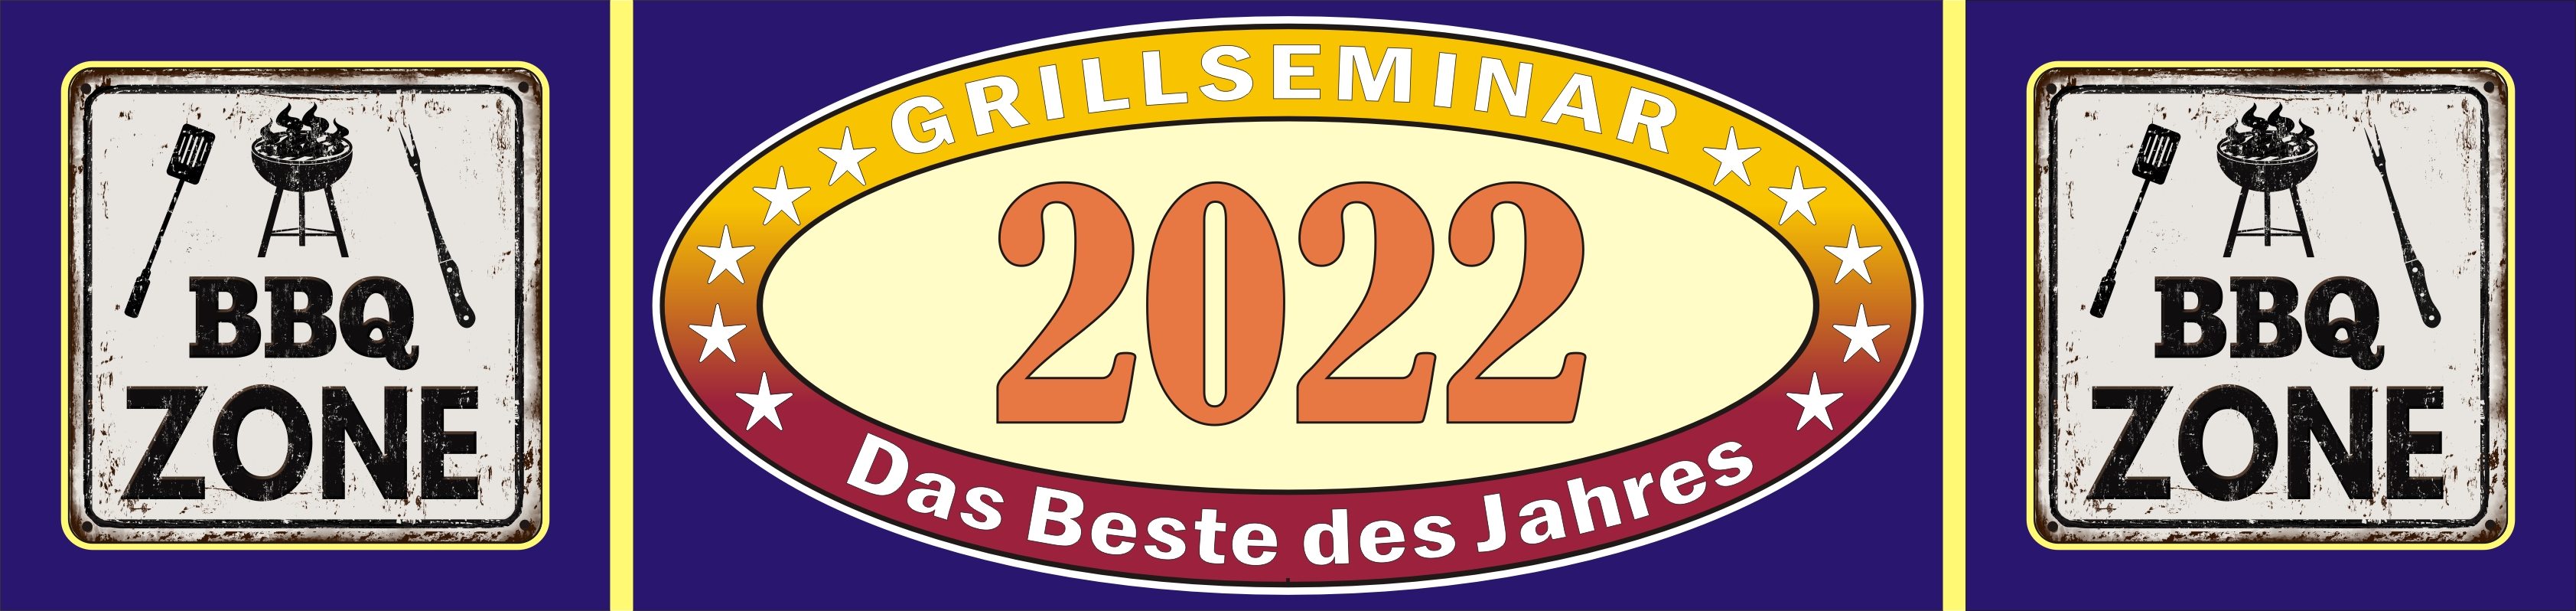 Der Grillkurs DAS BESTE DES JAHRES 2022, für Teilnehmer aus Herford, Hiddenhausen, Bad Salzuflen, Bielefeld, Paderborn, Gütersloh,...